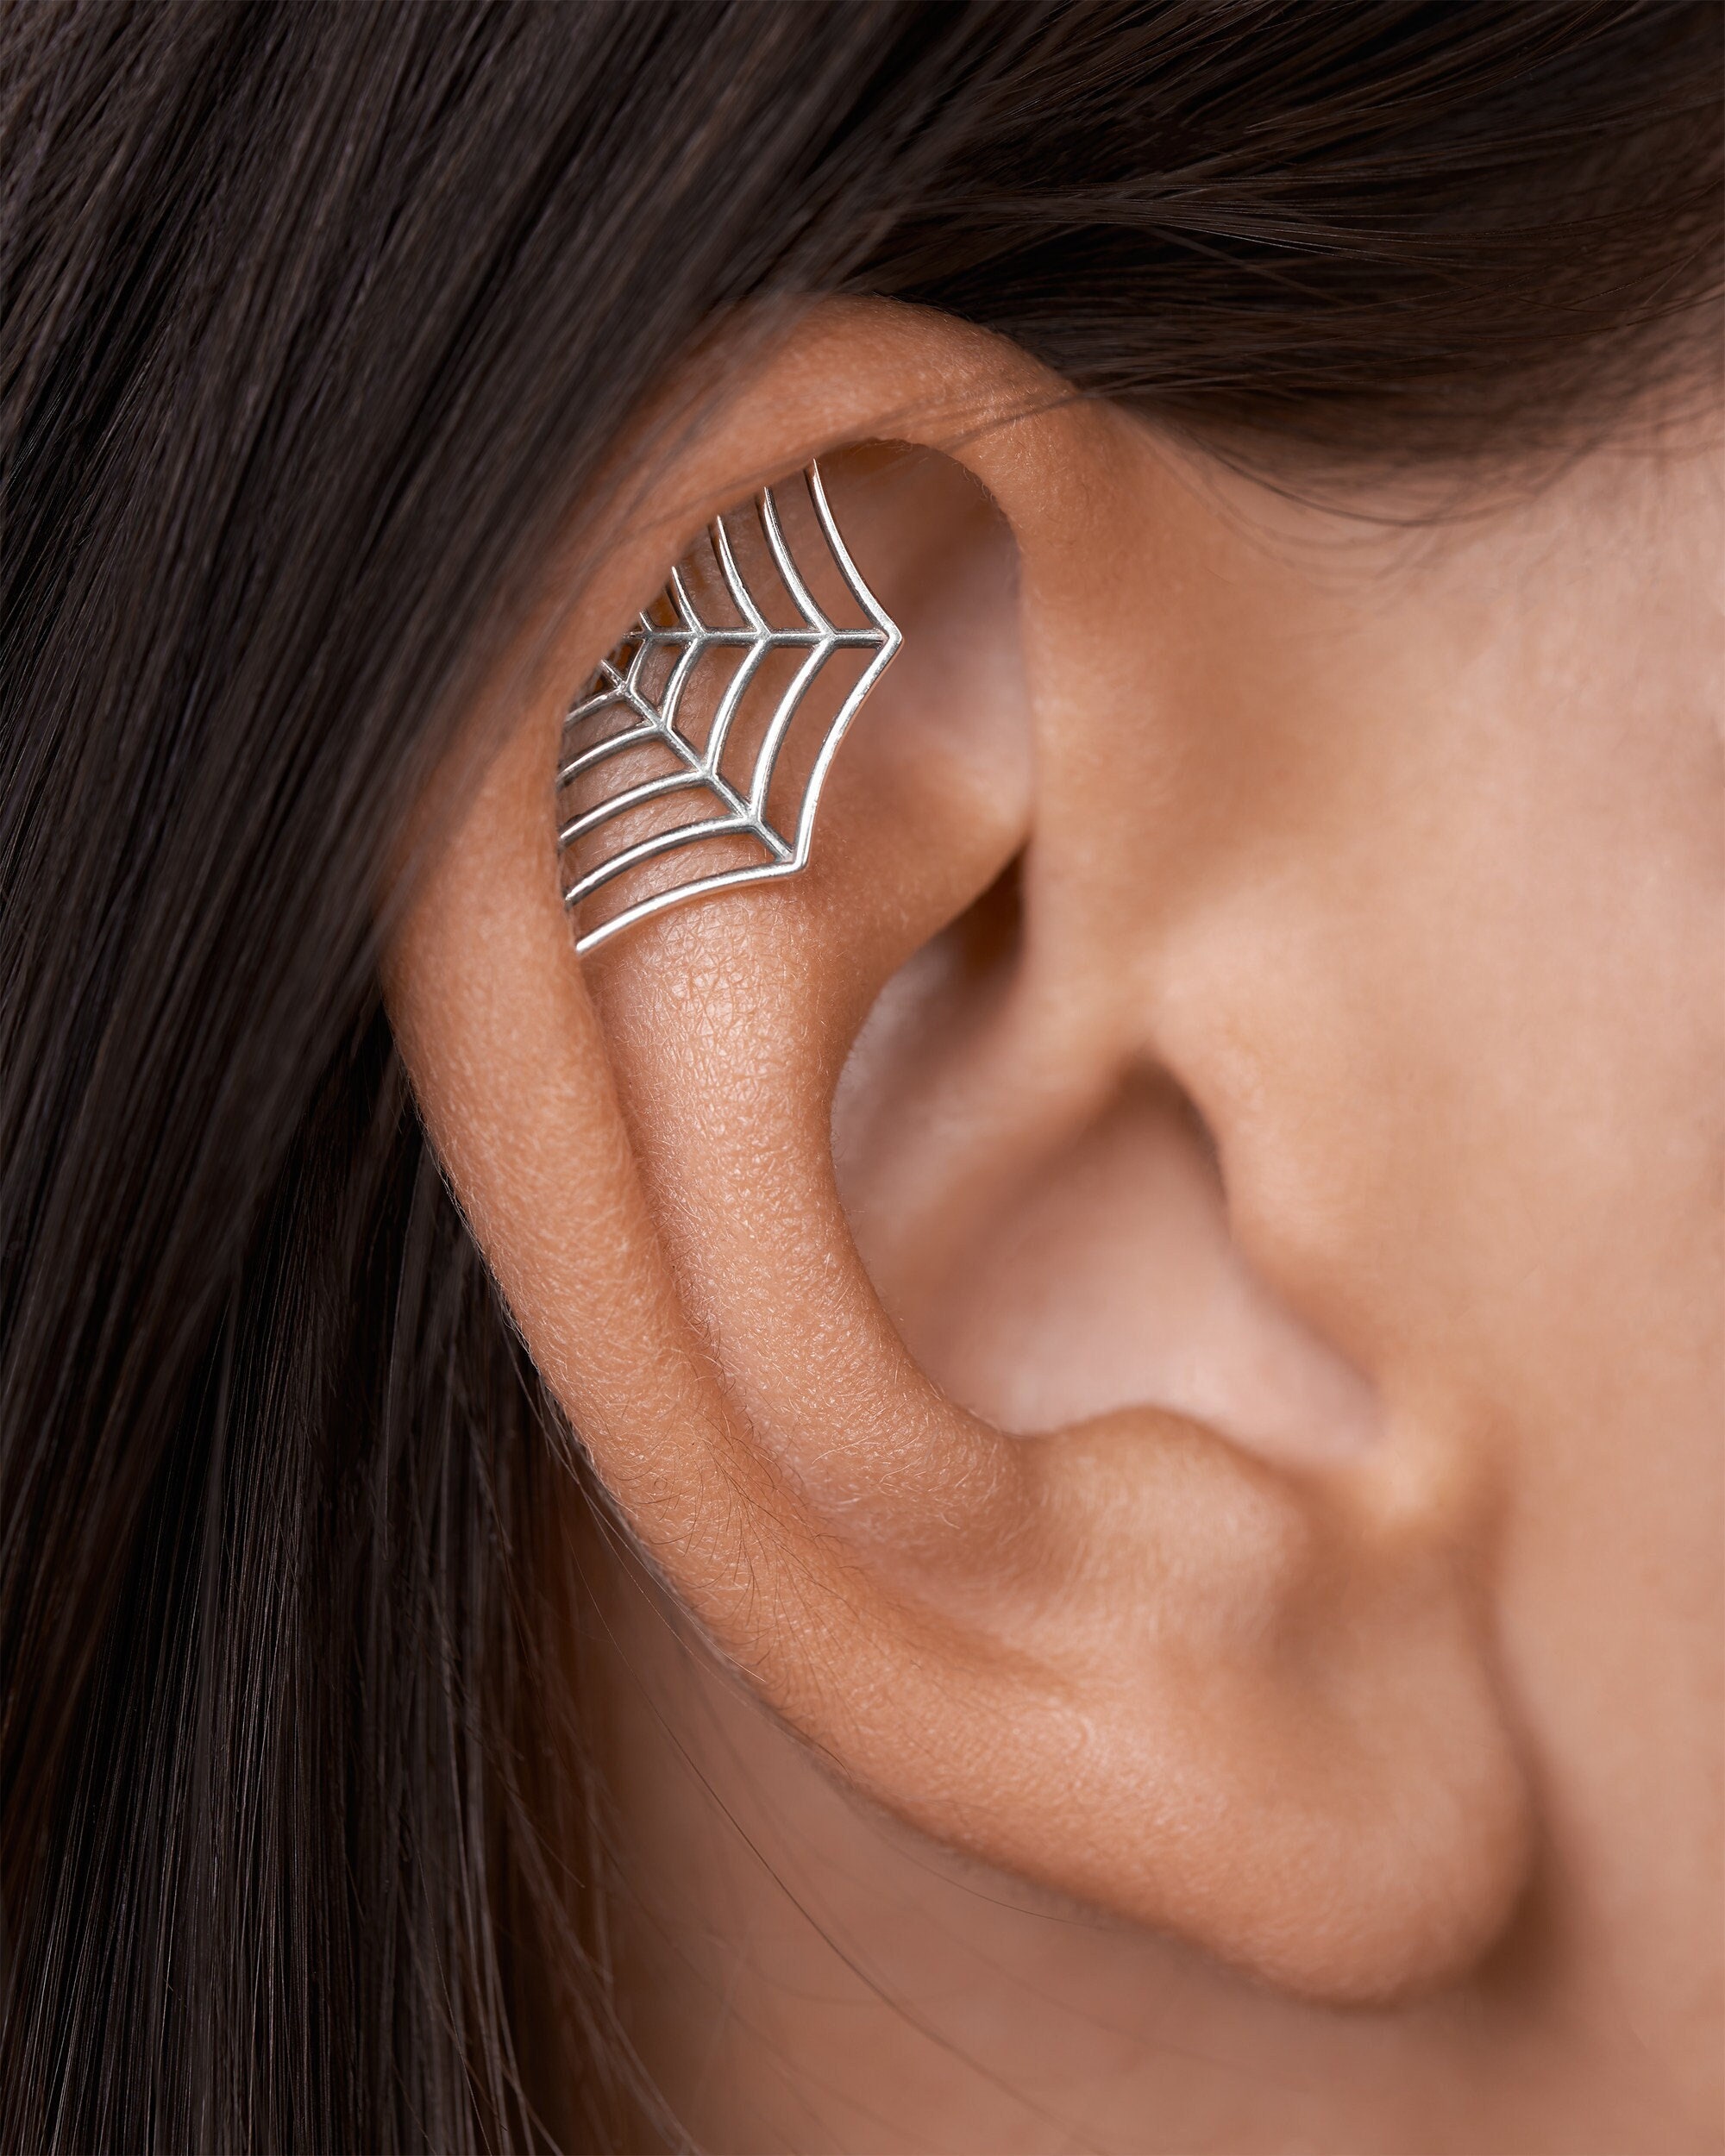 CASSIECA 20G Cartilage Earring Stud for Women Men 316L Surgical Steel Flat  Back Earrings Set, 2-6mm Round CZ Screw Back Stud Earrings for Cartilage